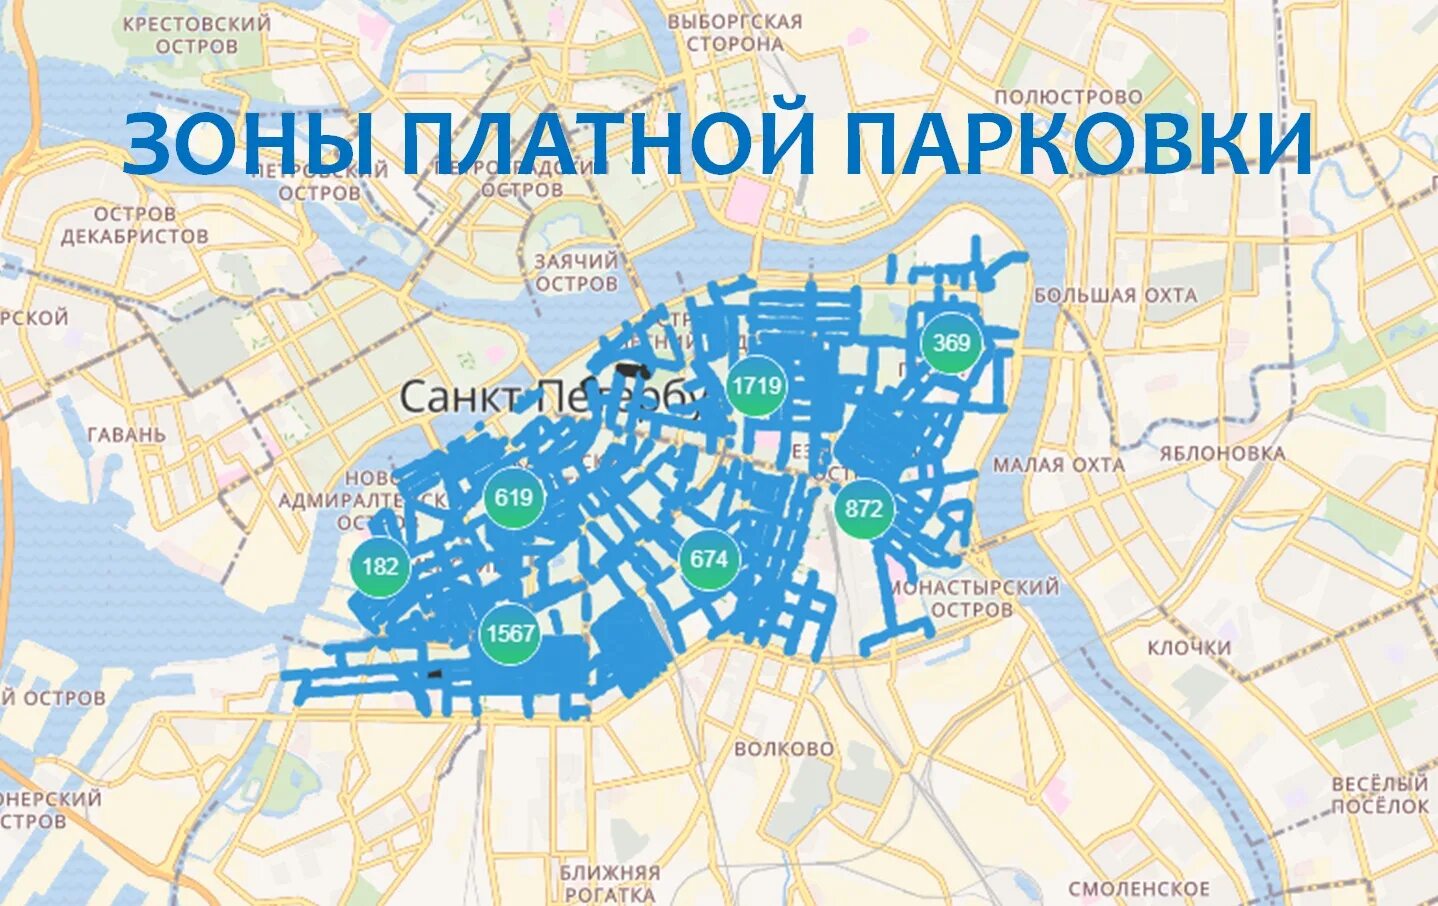 Зона платной парковки в Санкт-Петербурге на карте. Зоны платных парковок в СПБ на карте. Границы зоны платной парковки в СПБ. Зона платной парковки в Санкт-Петербурге на карте 2020.